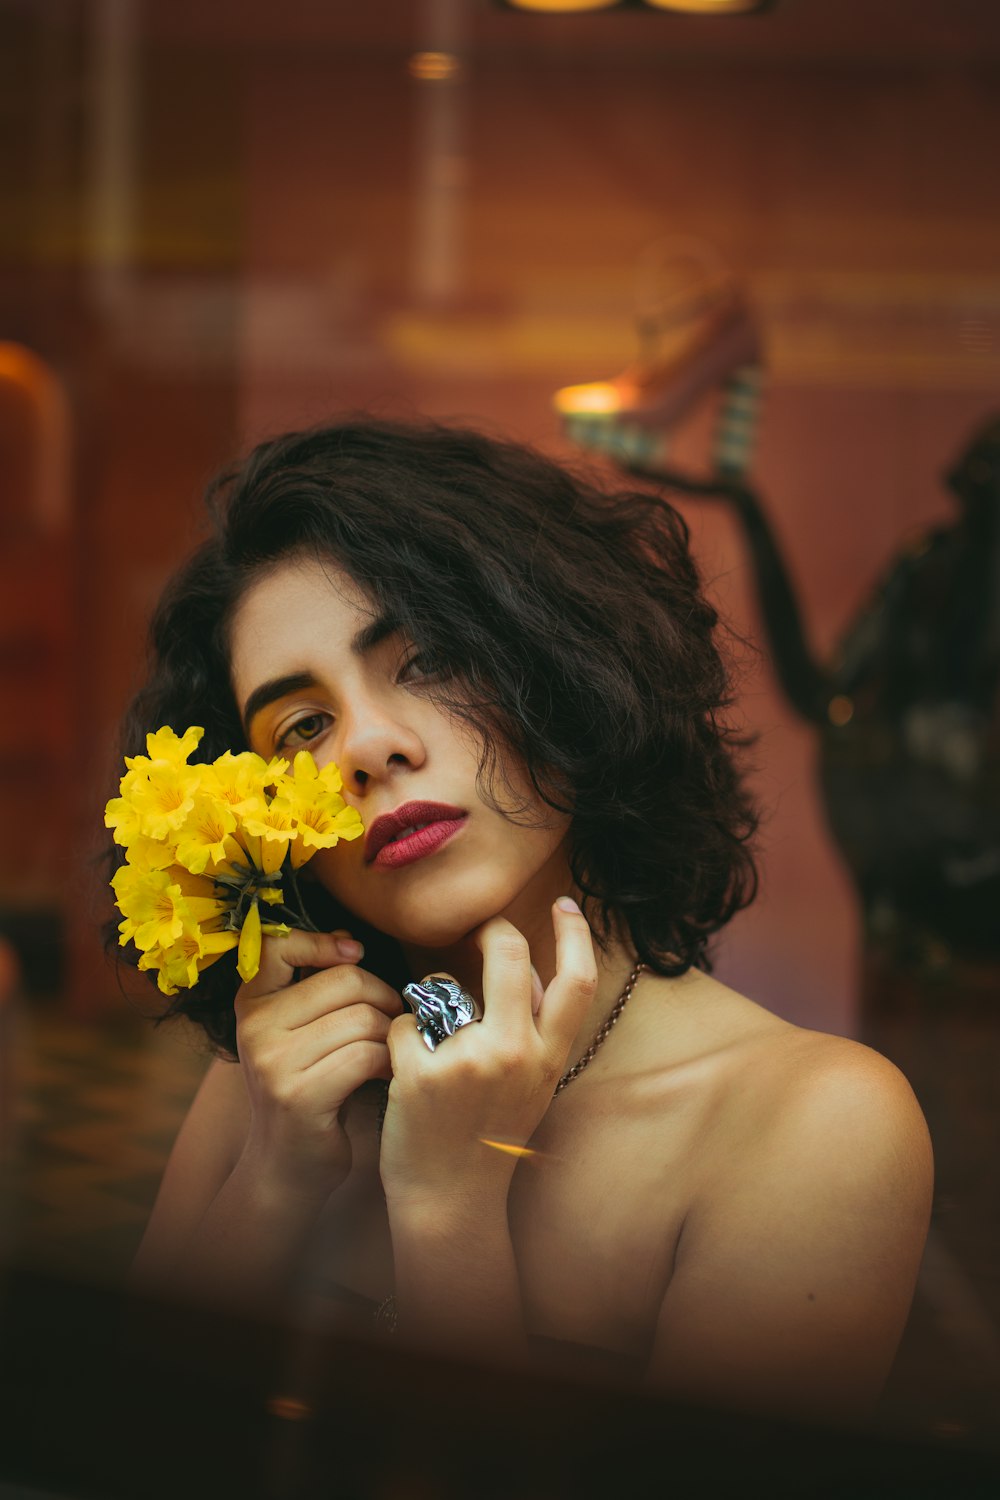 黄色い花を持つ女性